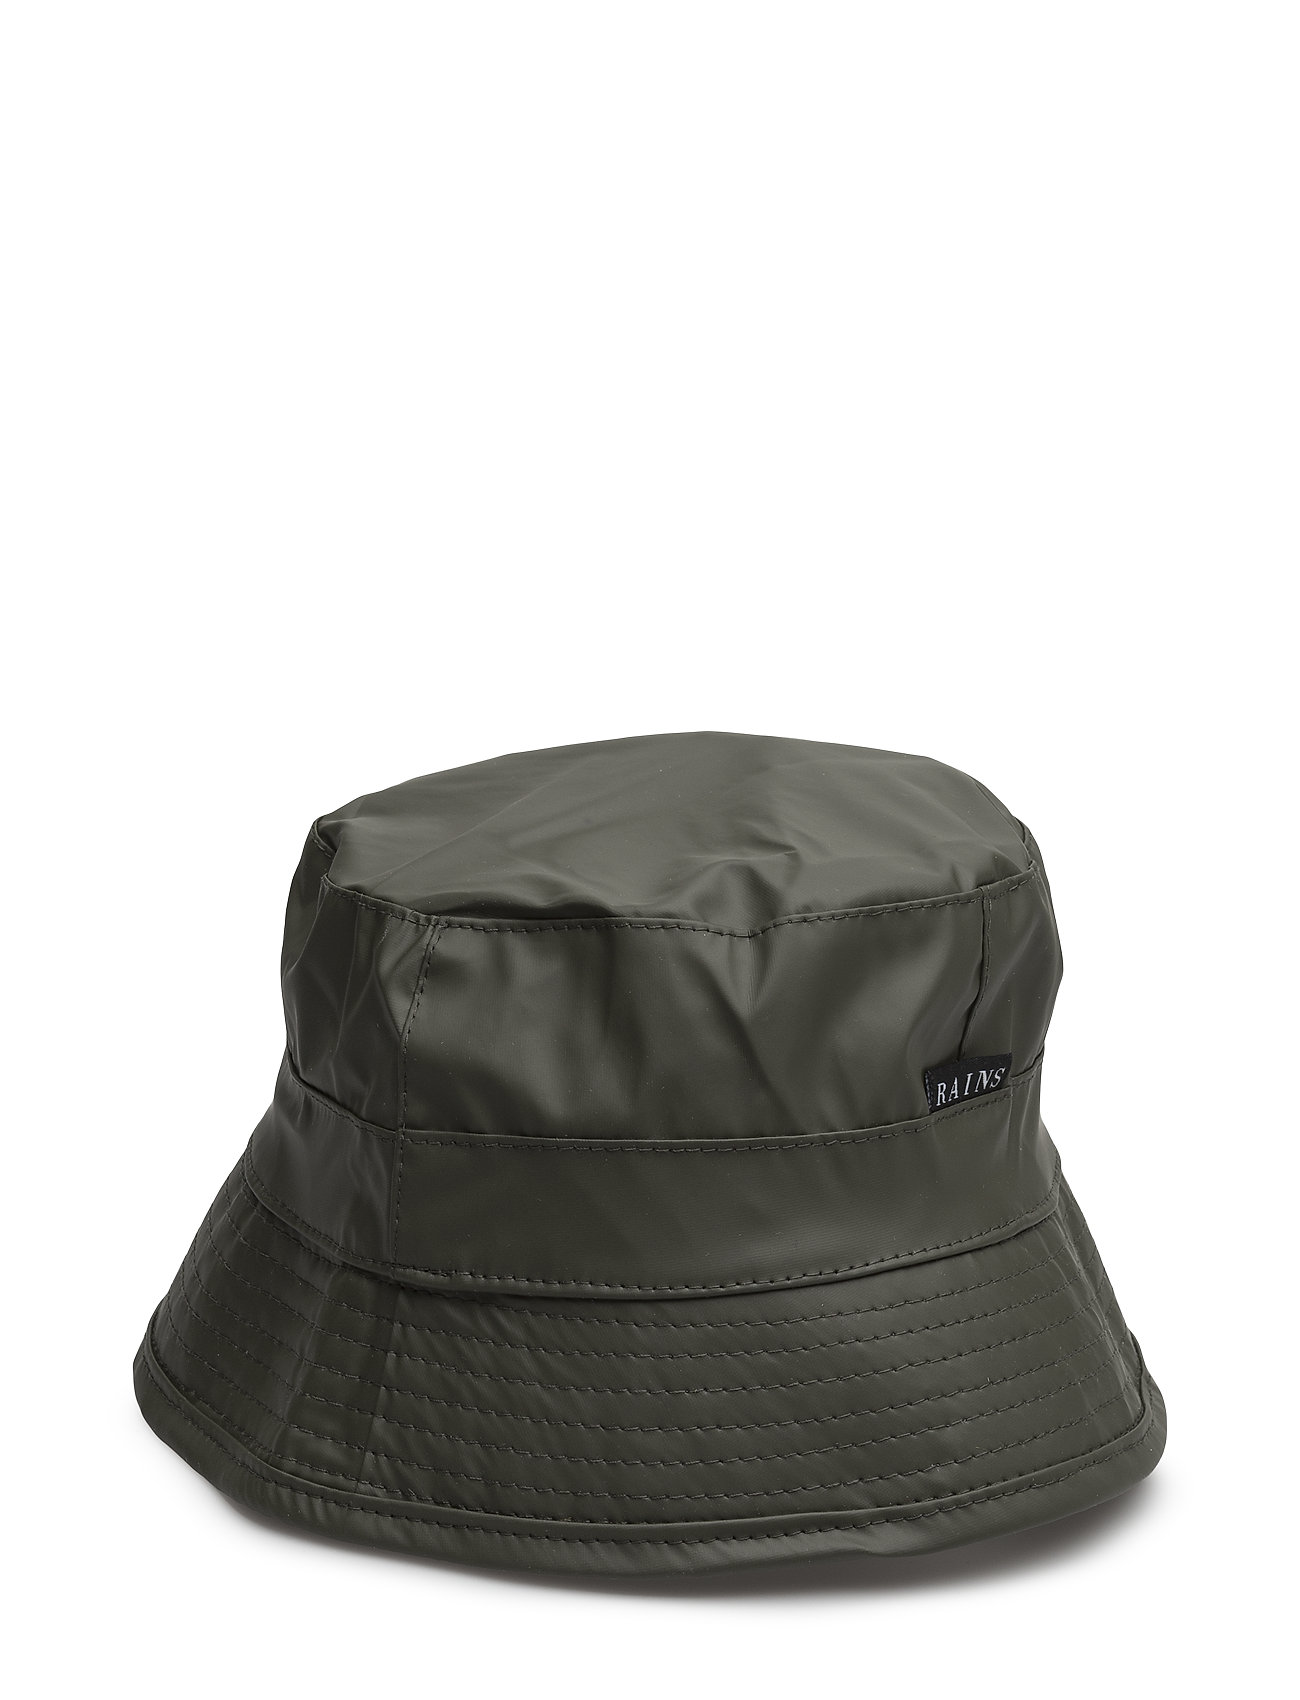 Bucket Hat Accessories Headwear Vihreä Rains